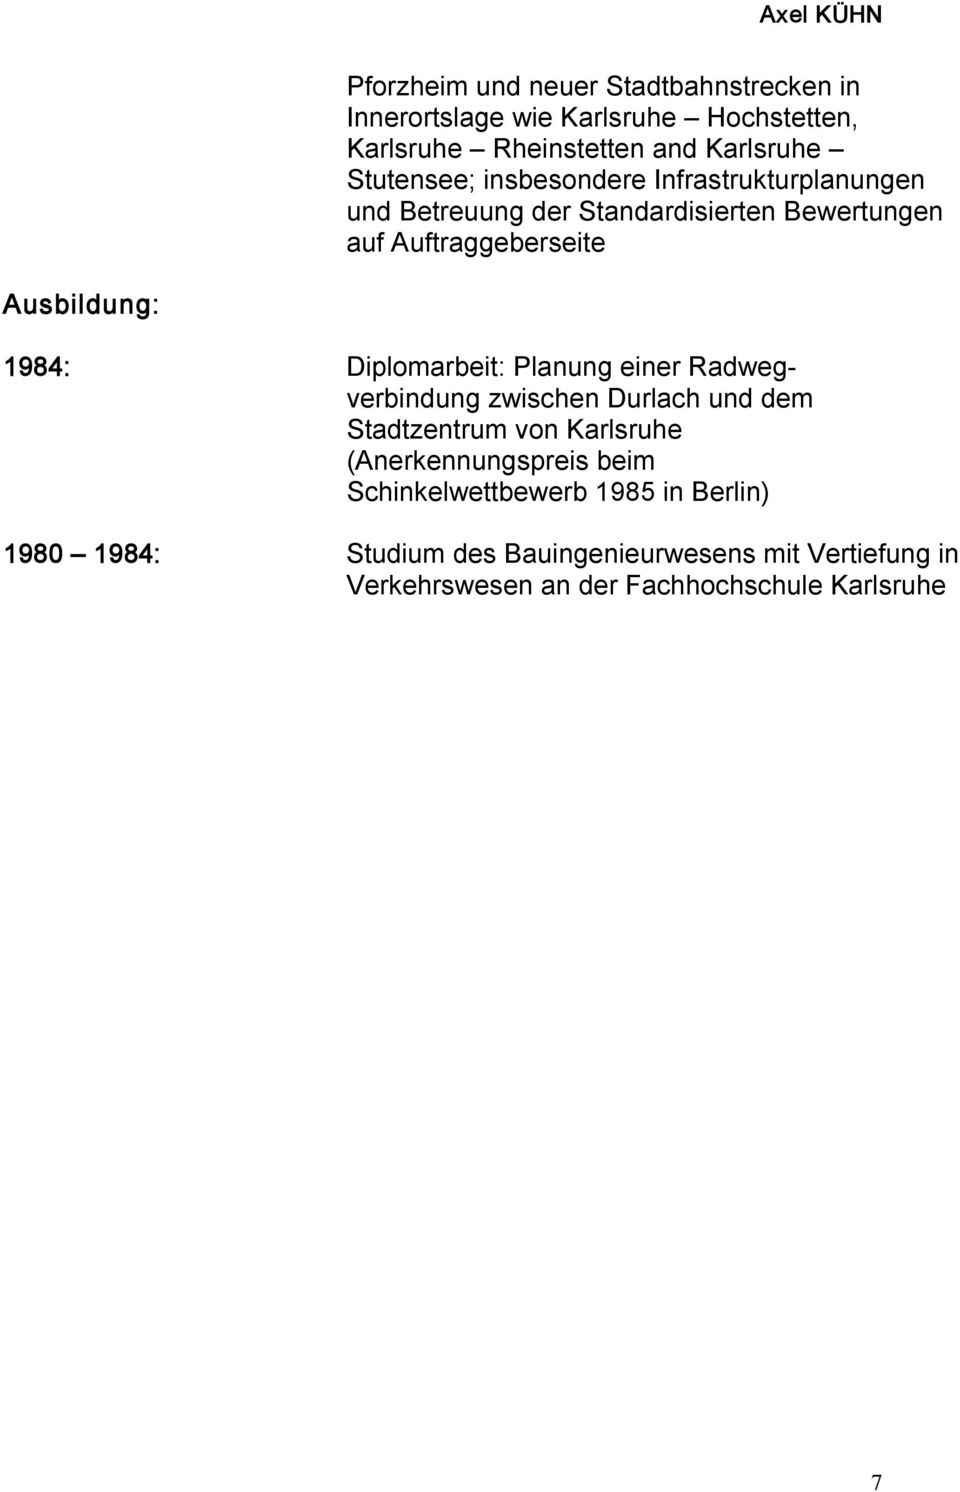 1984: Diplomarbeit: Planung einer Radwegverbindung zwischen Durlach und dem Stadtzentrum von Karlsruhe (Anerkennungspreis beim